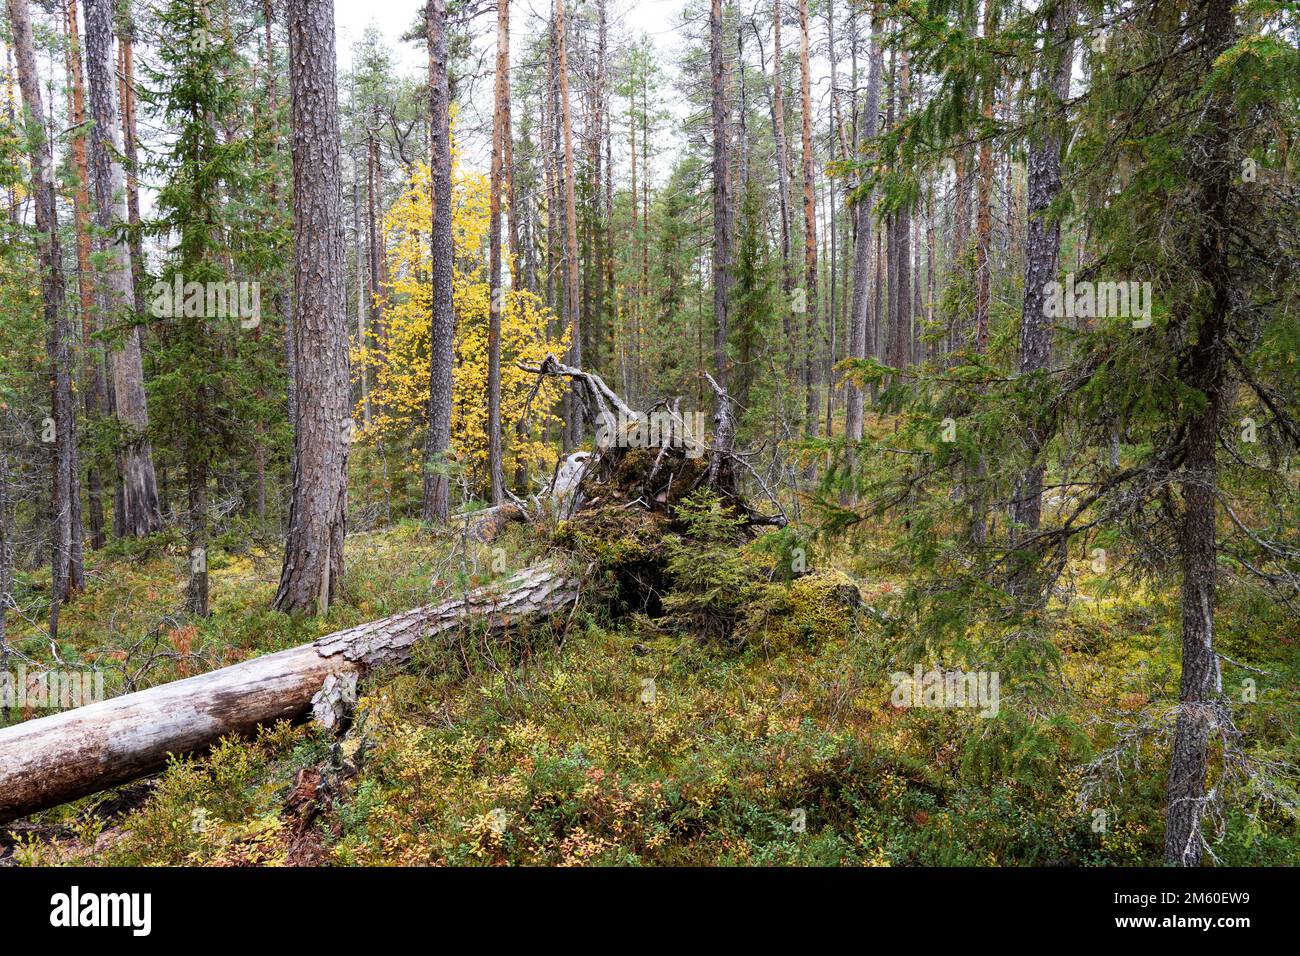 Une forêt vierge mixte de taïga avec bois mort sur le plancher de la forêt lors d'une soirée d'automne dans le parc national d'Oulanka, dans le nord de la Finlande Banque D'Images